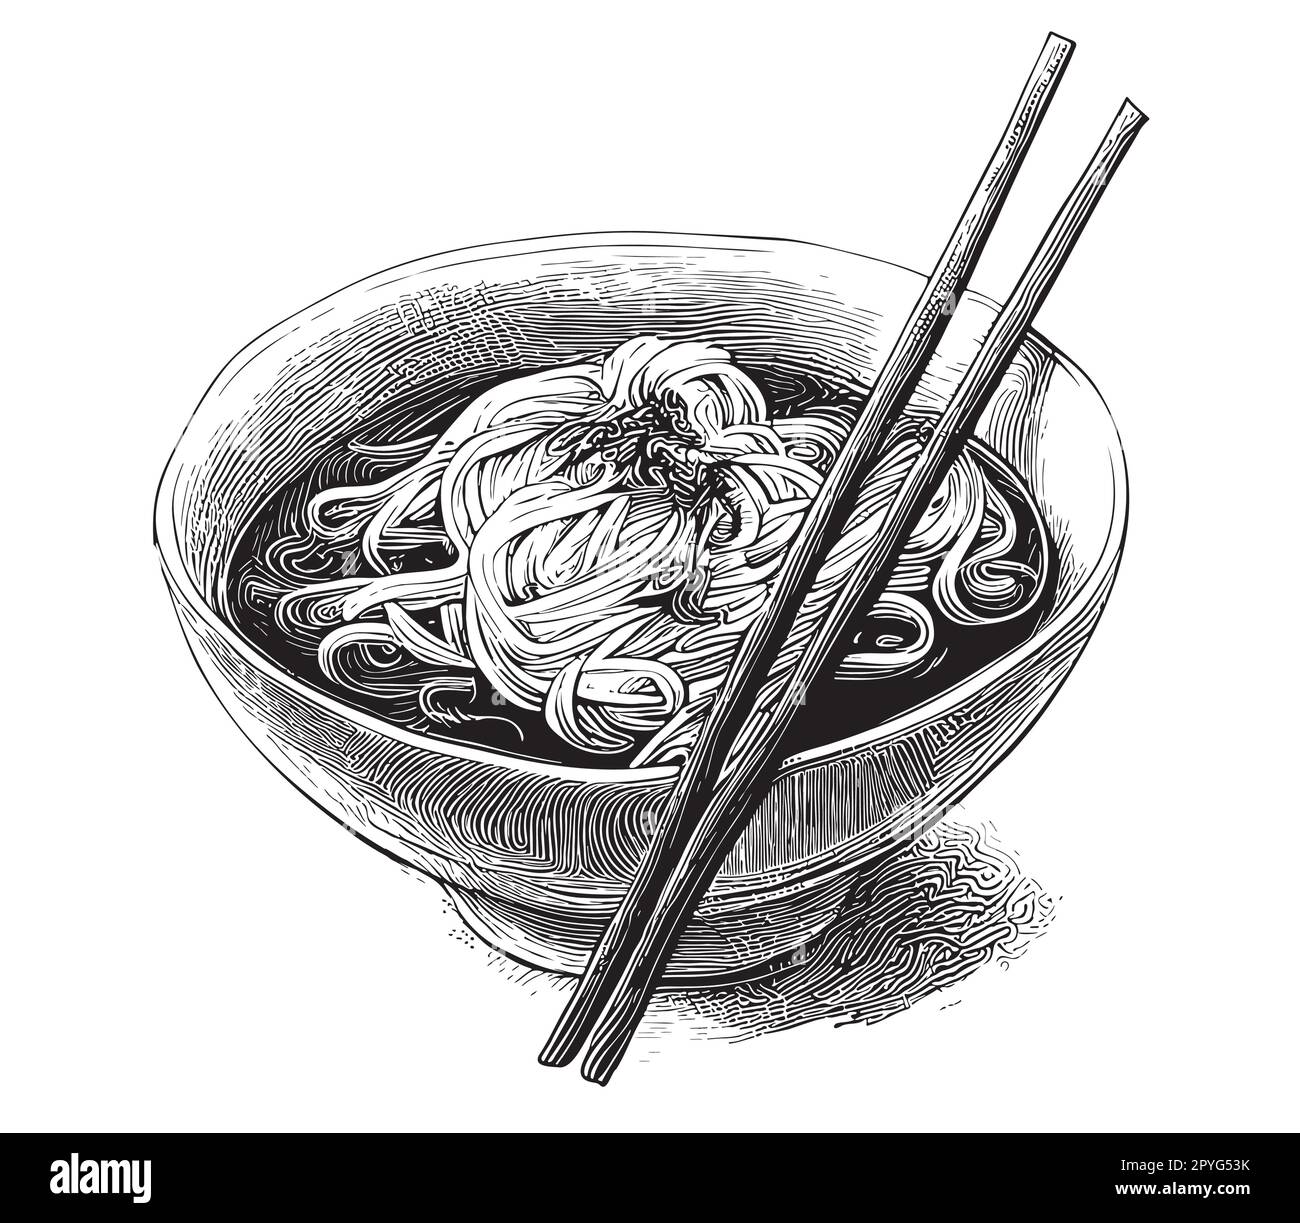 Tagliatelle asiatiche disegnate a mano in un'illustrazione di stile doodle Illustrazione Vettoriale